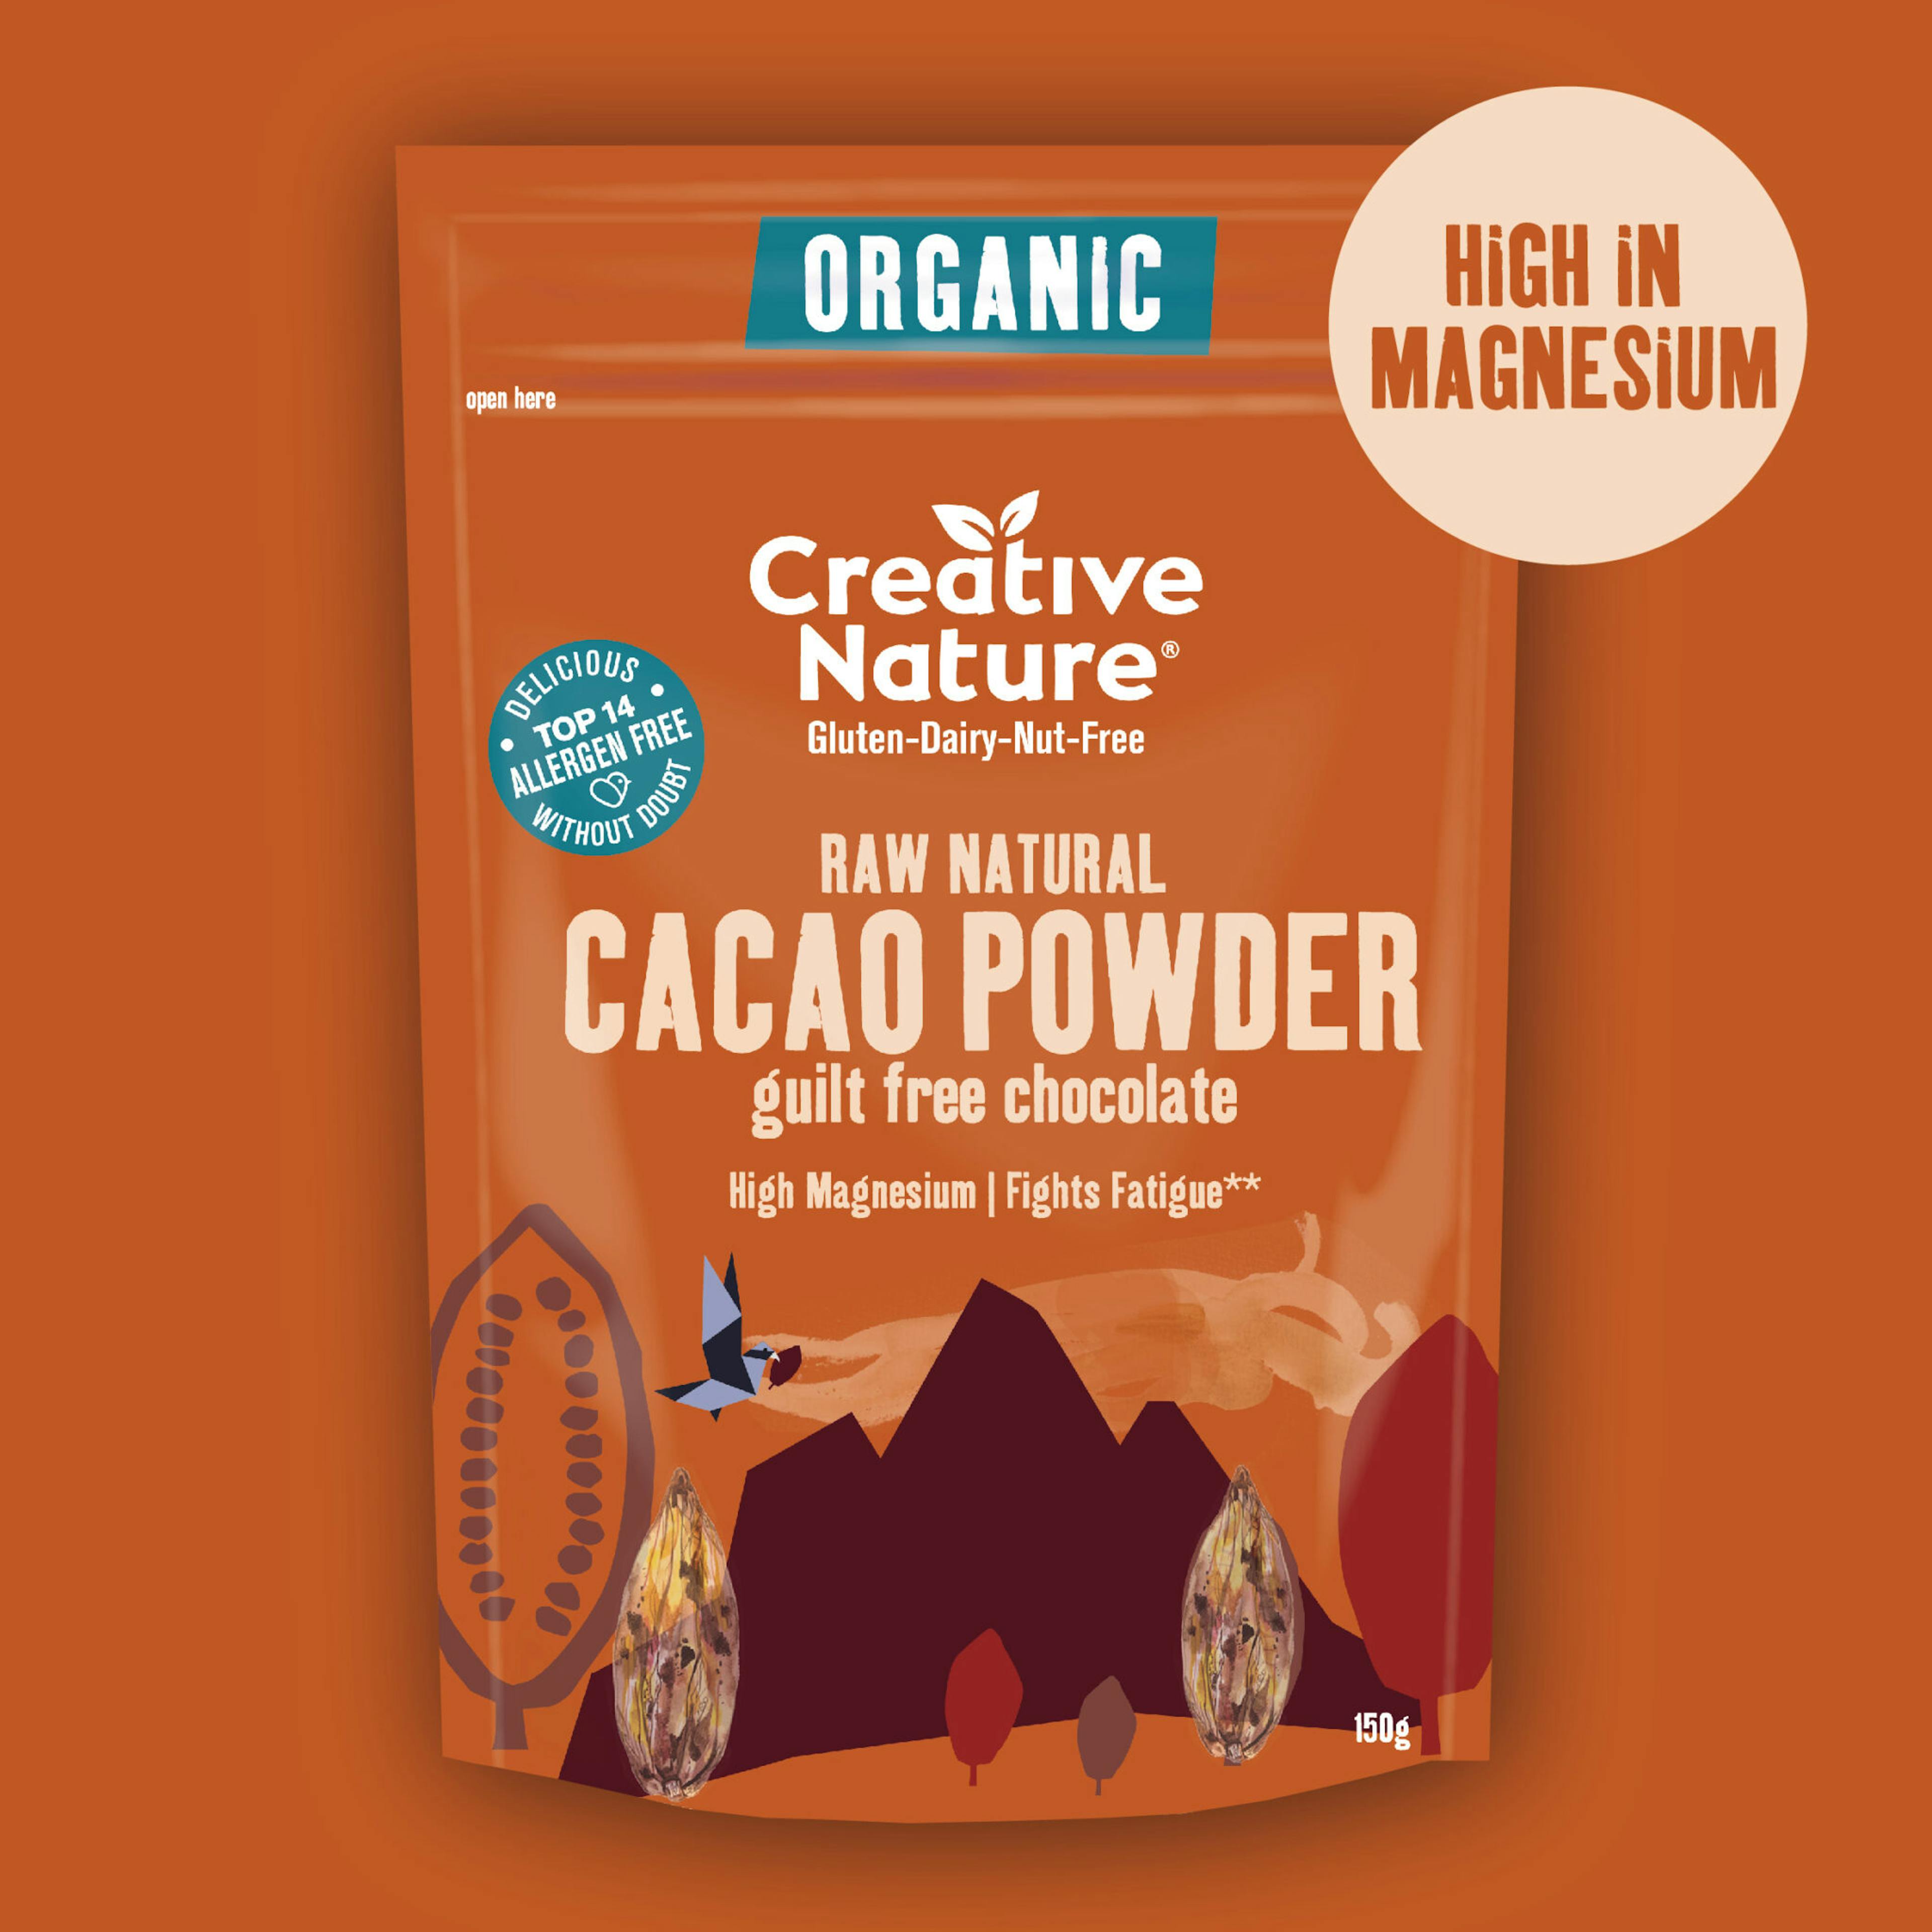 100% Organic Raw Cacao Powder | 100g, 200g, or 600g